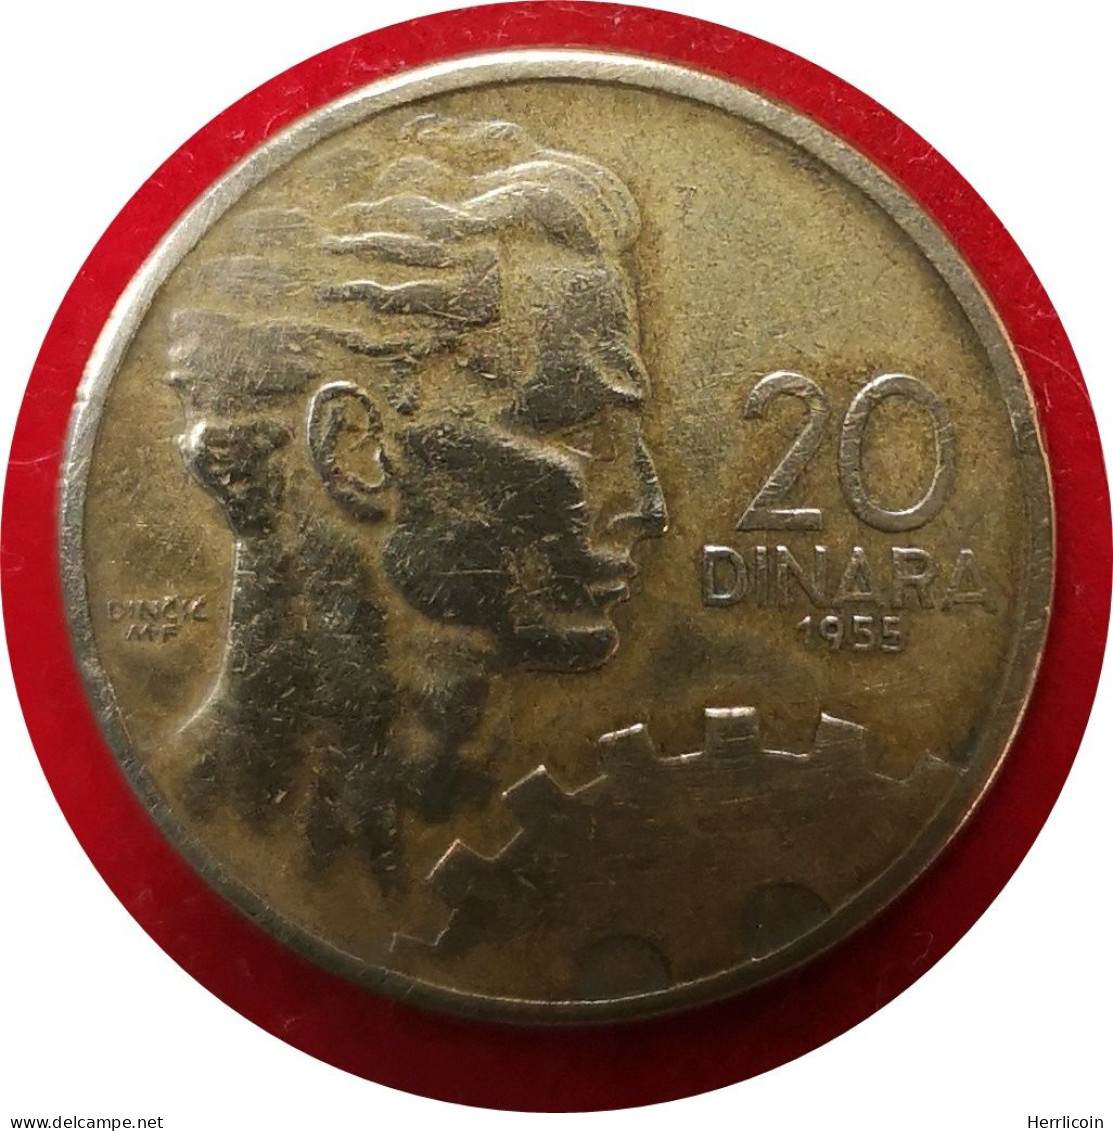 Monnaie Yougoslavie - 1955 - 20 Dinars - Yugoslavia